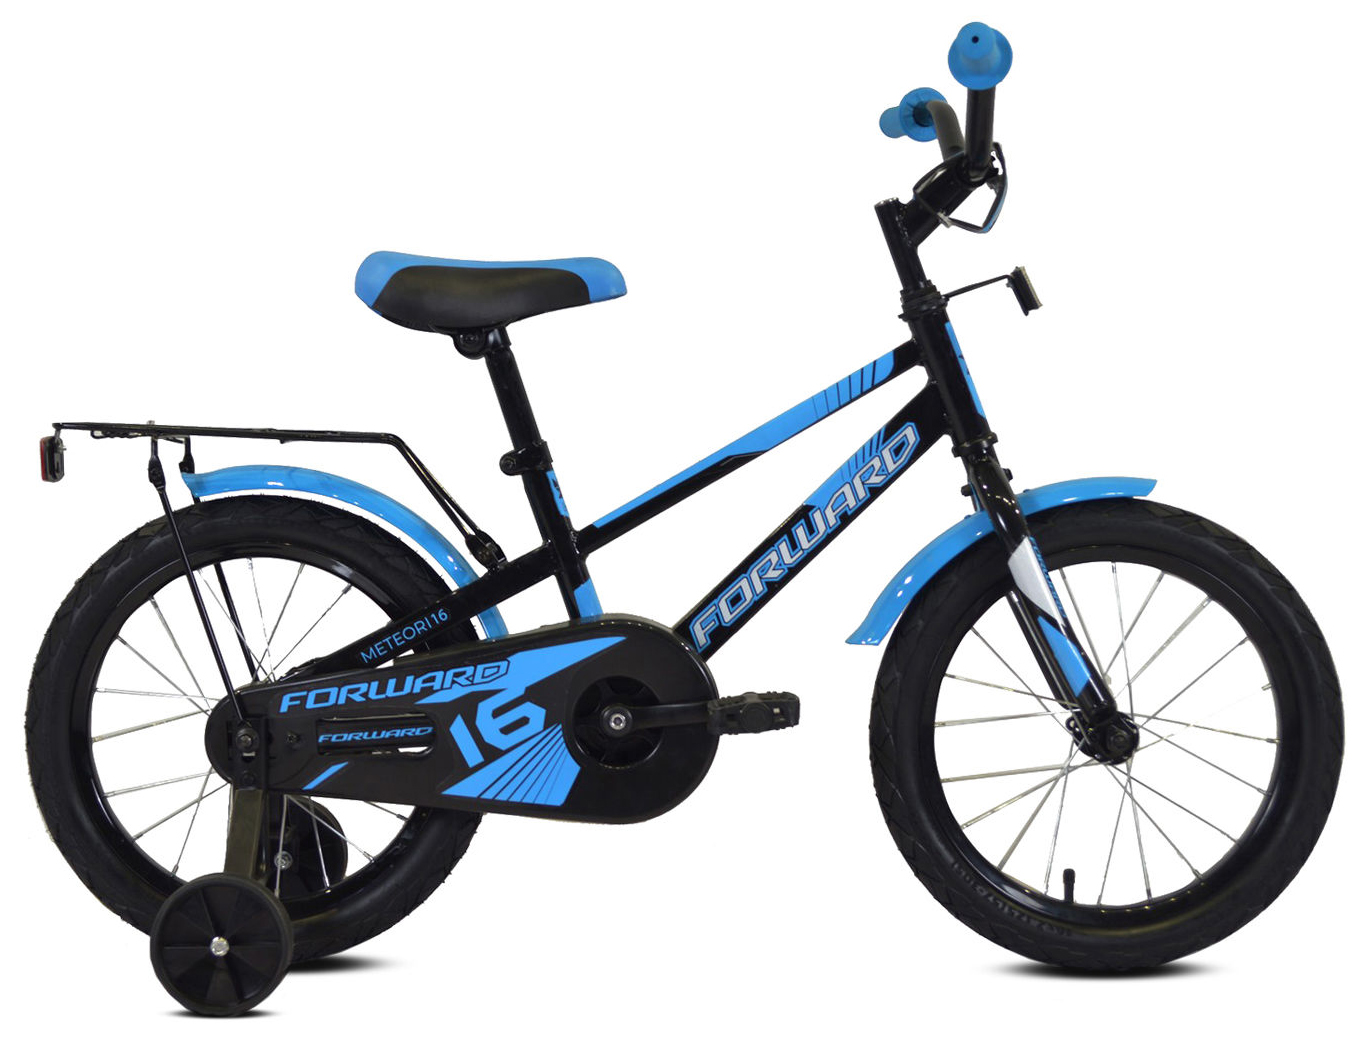  Отзывы о Детском велосипеде Forward Meteor 16 2020